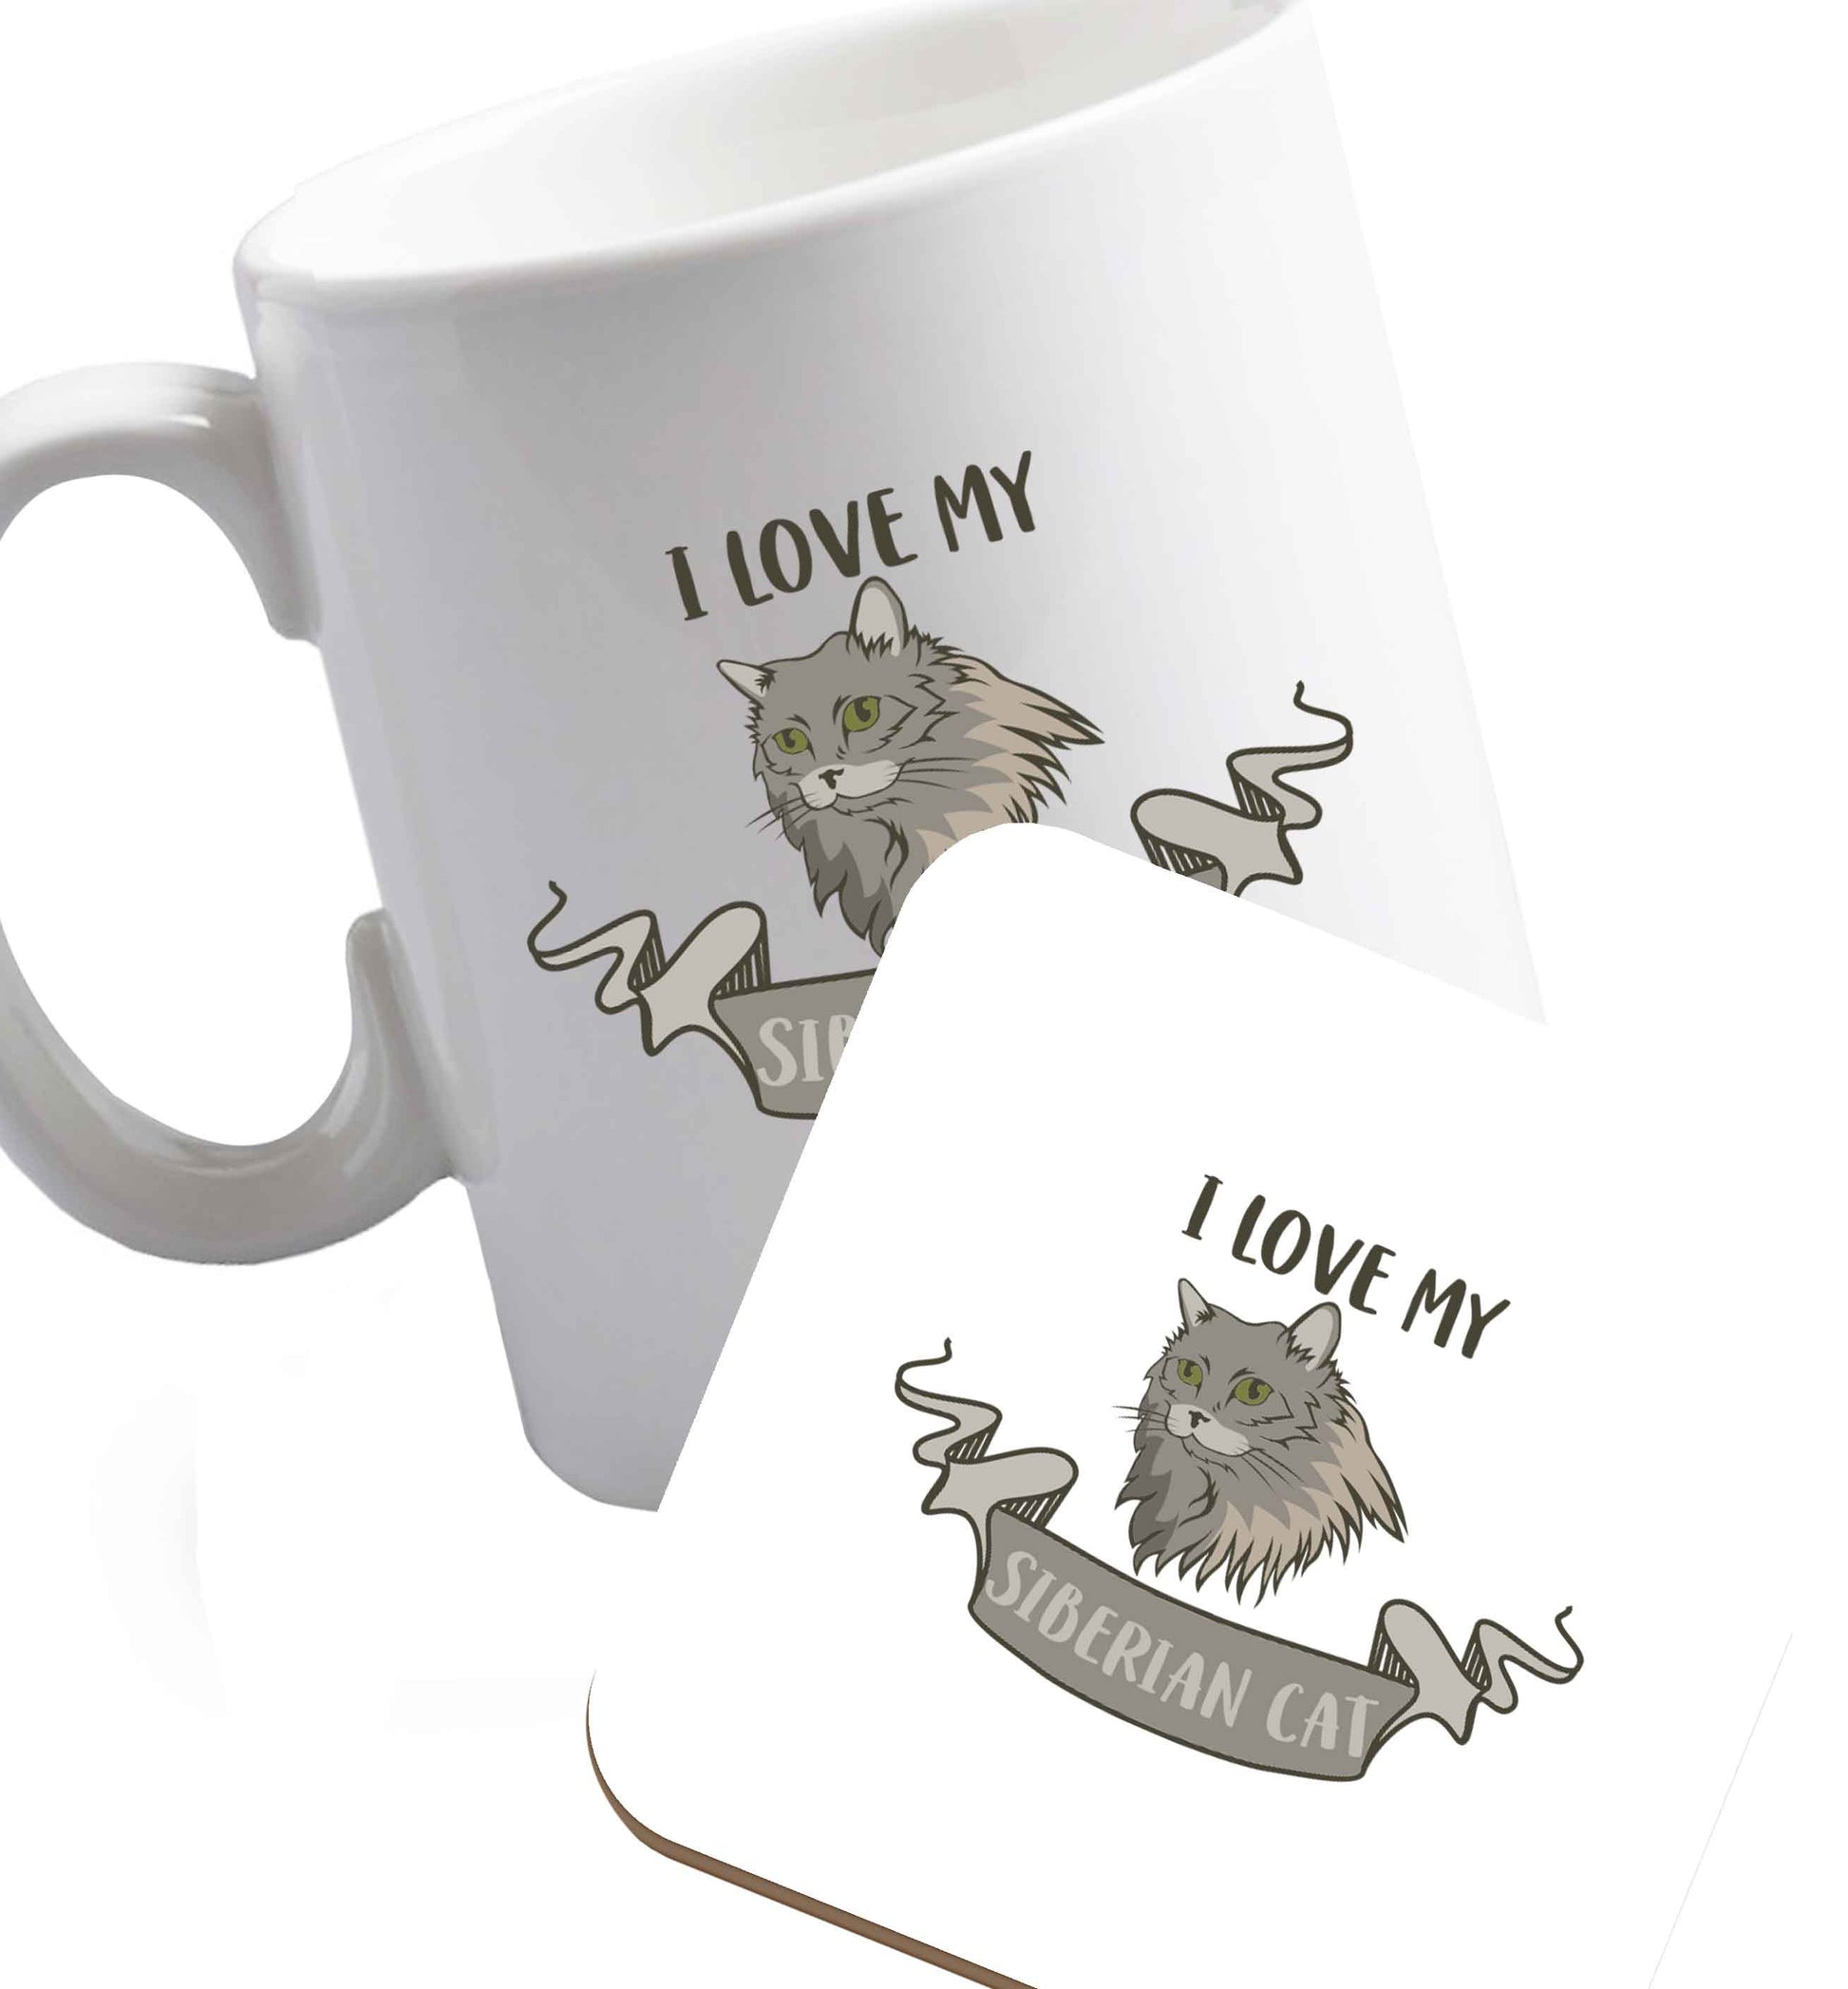 10 oz I love my siberian cat ceramic mug and coaster set right handed